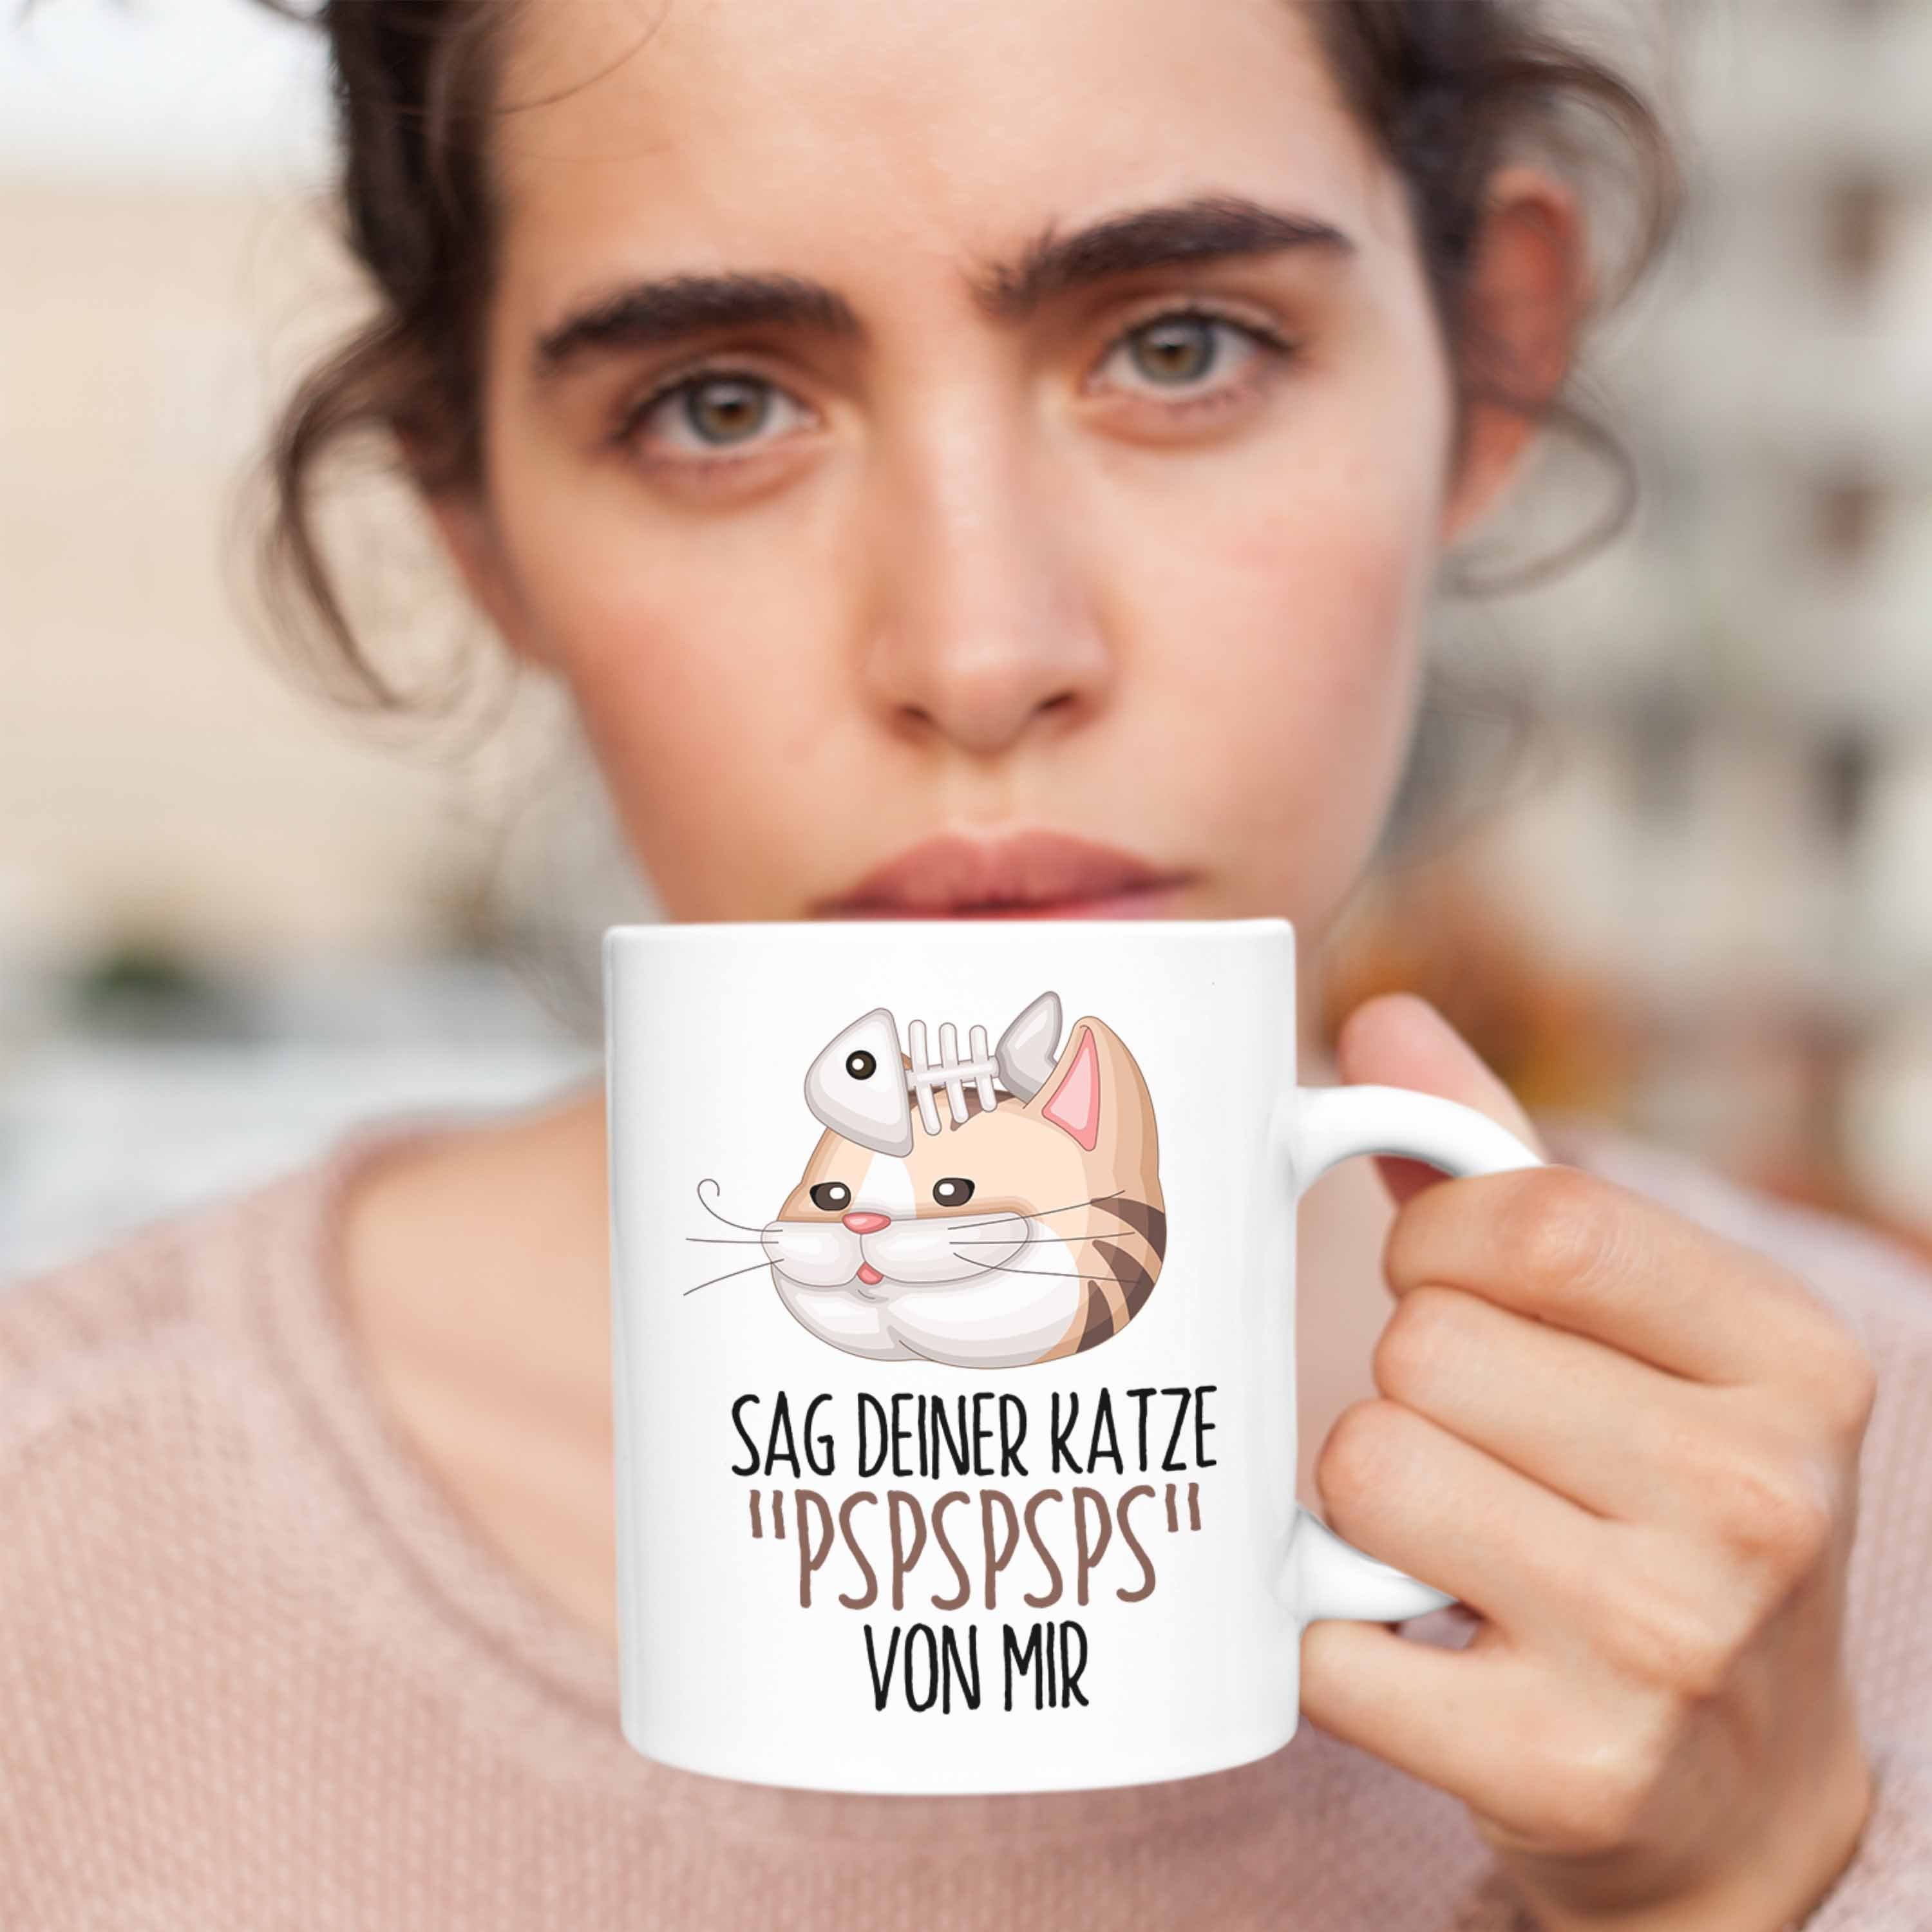 für Deiner Mir Geschenkidee Tasse Weiss Katzen-Besitz Katze Pspspsps Von Tasse Trendation Sag